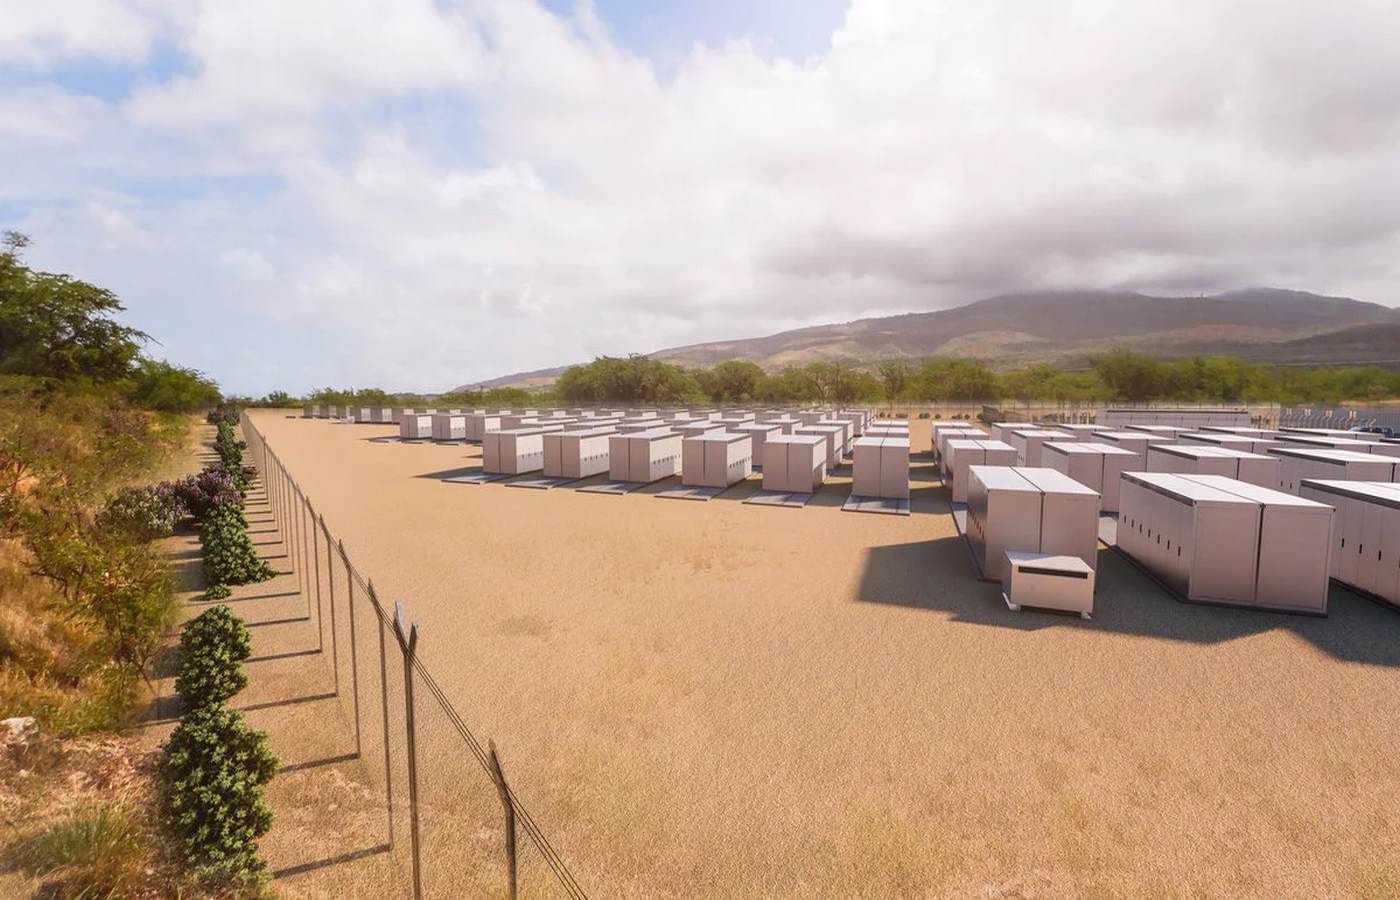 158 Baterai Mega Tesla Akan Meningkatkan Energi Hijau Hawaii sebesar 10%, Dan Mematikan Pembangkit Listrik Tenaga Batubara